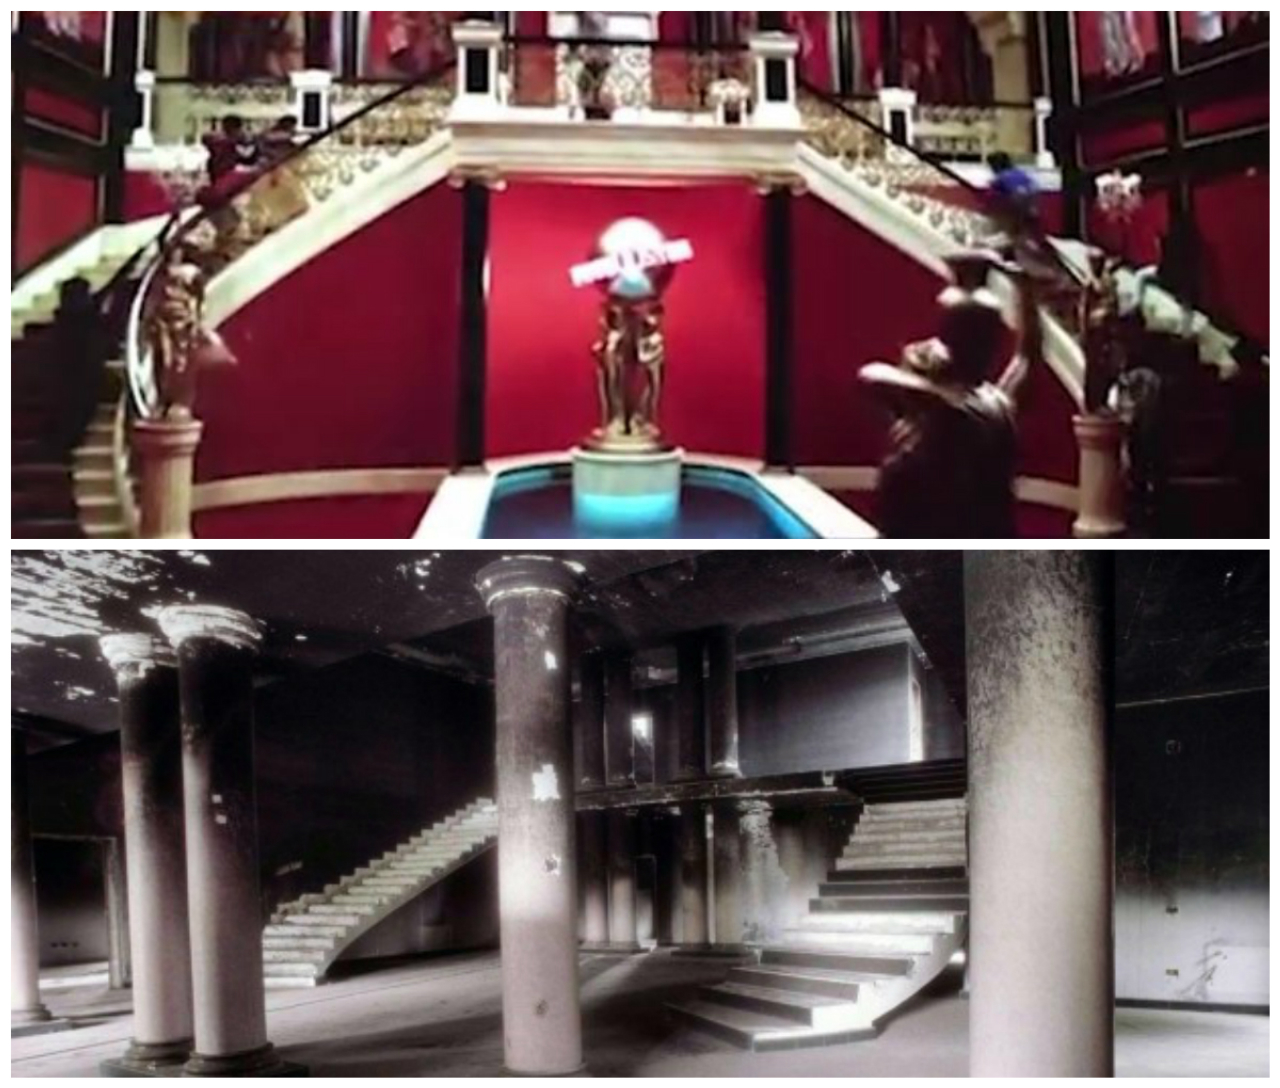 Até mesmo a escadaria dupla do filme (acima) foi reproduzida na vila italiana (abaixo). Fotos: Reprodução